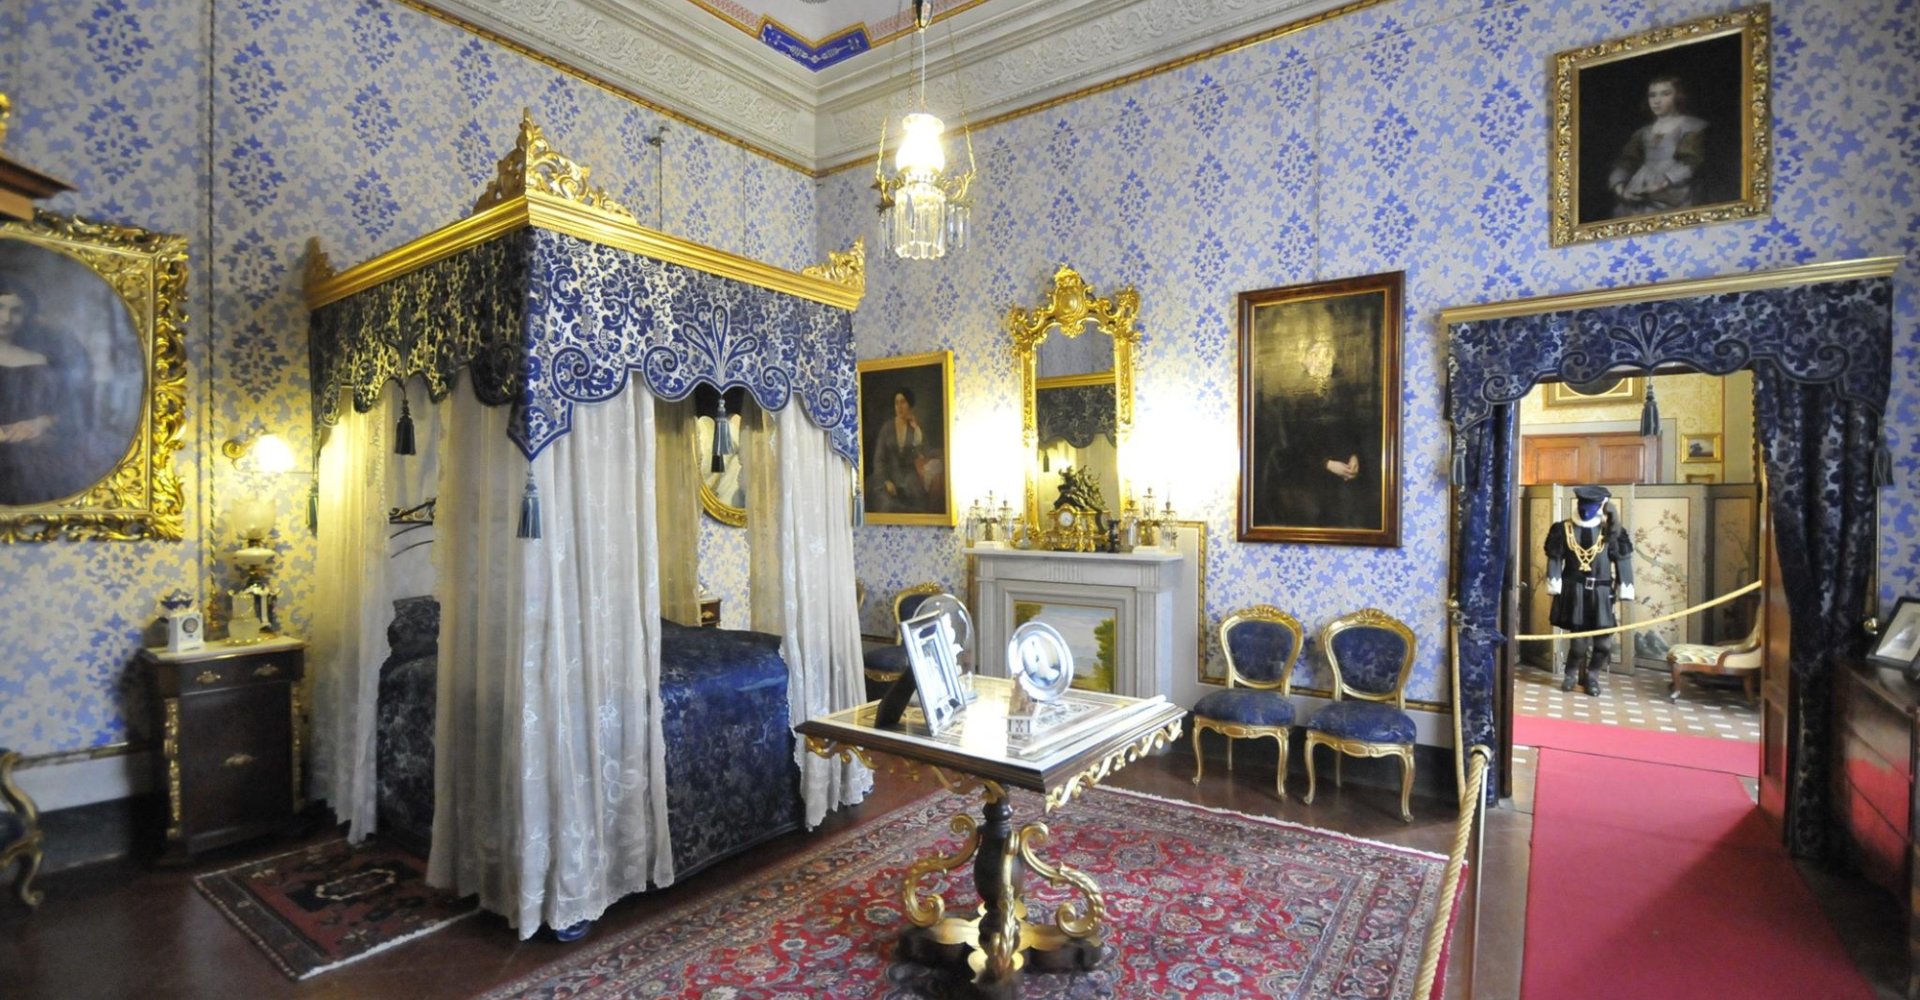 Palazzo Viti in Volterra